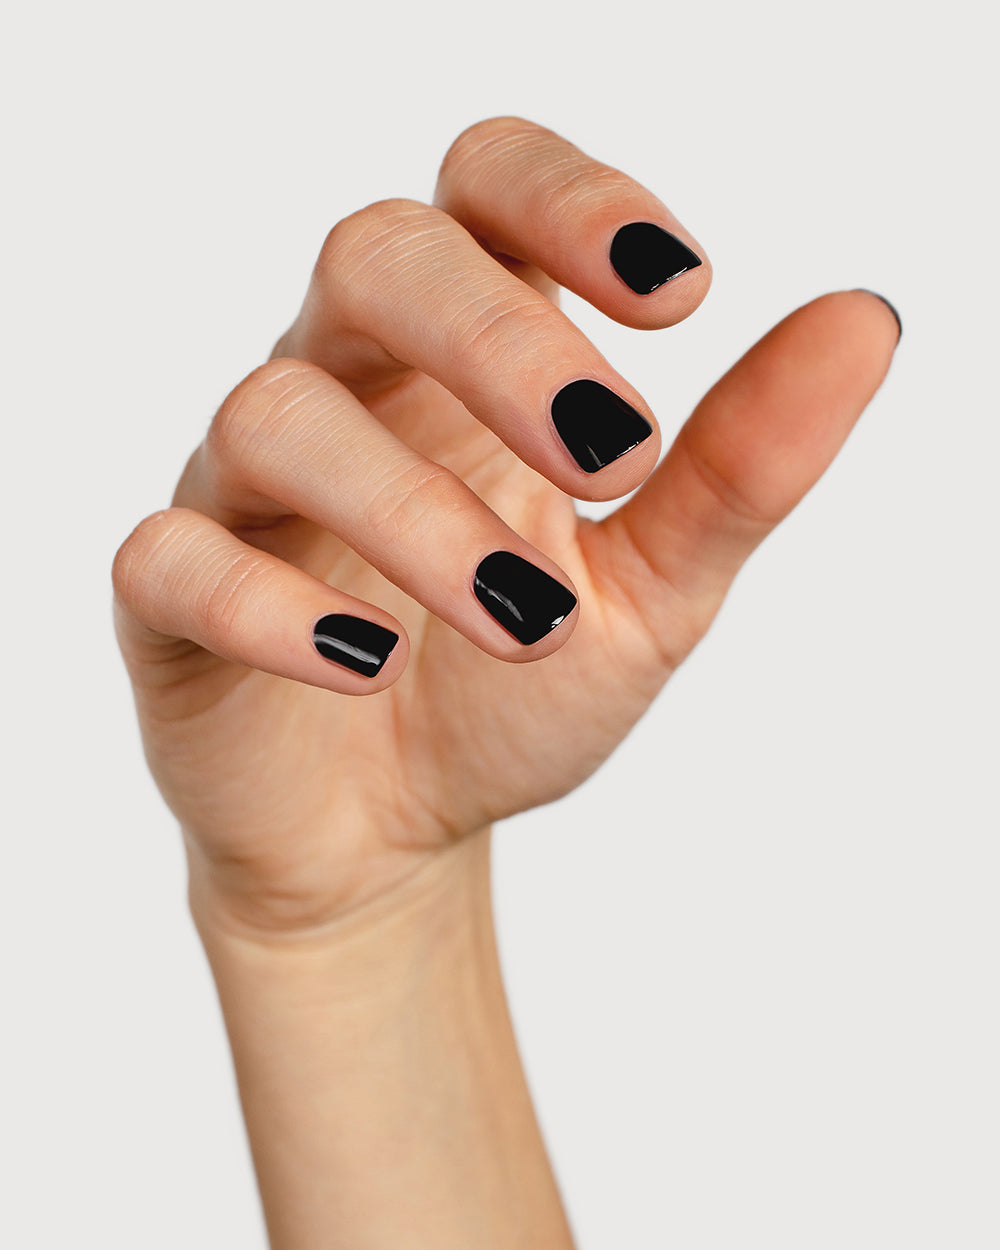 jet black nail polish hand swatch on fair skin tone